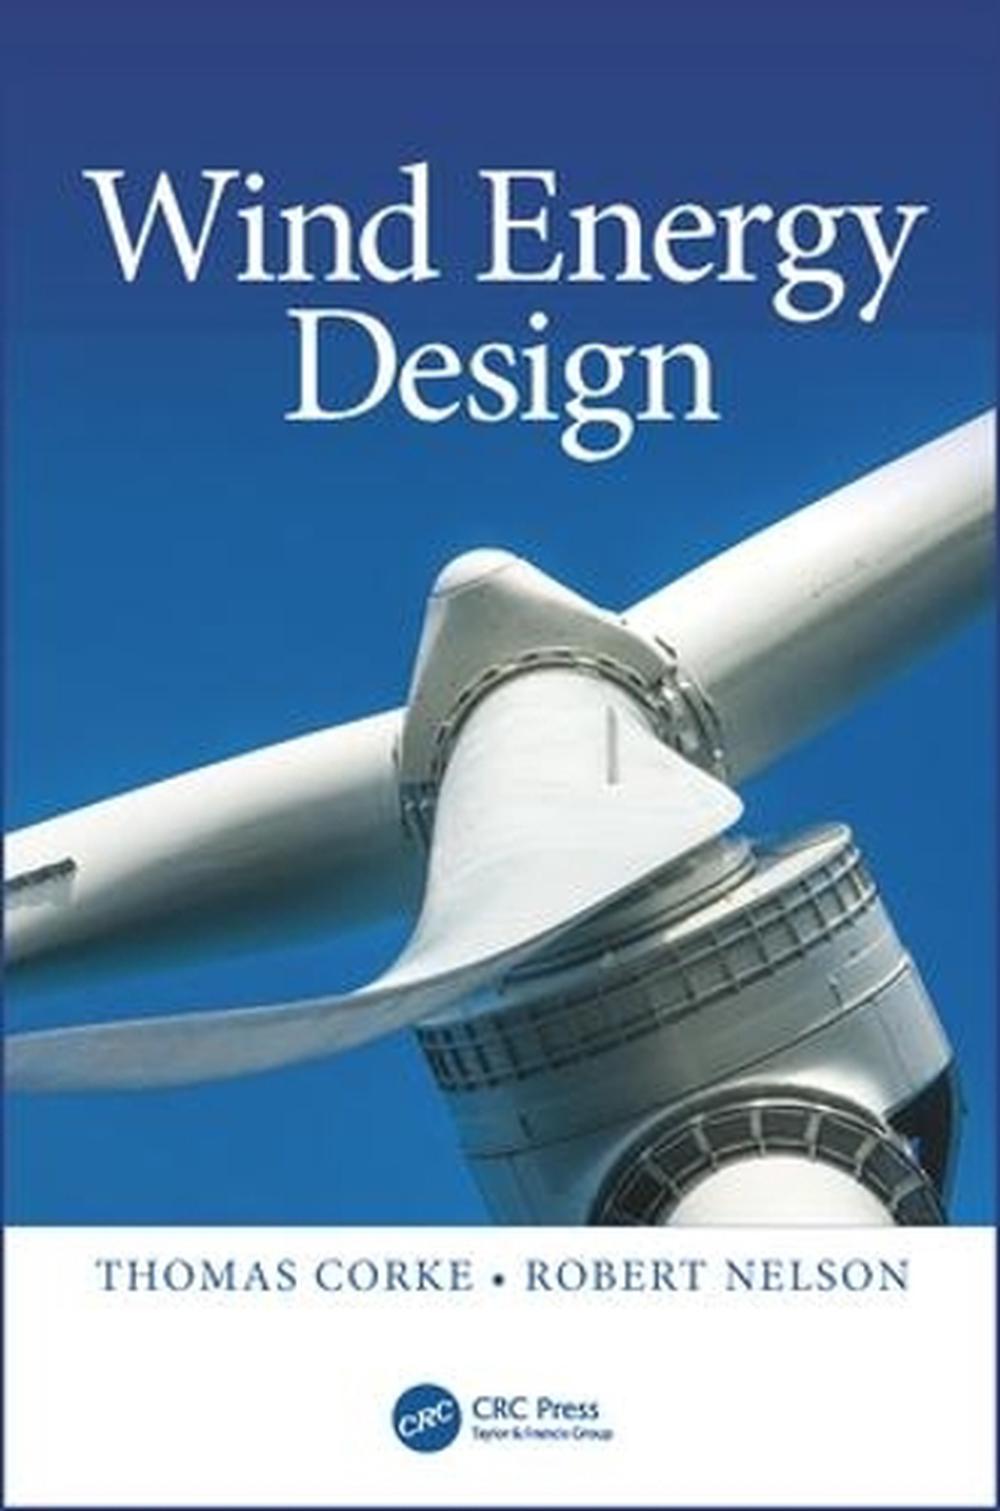 wind energy term paper topics